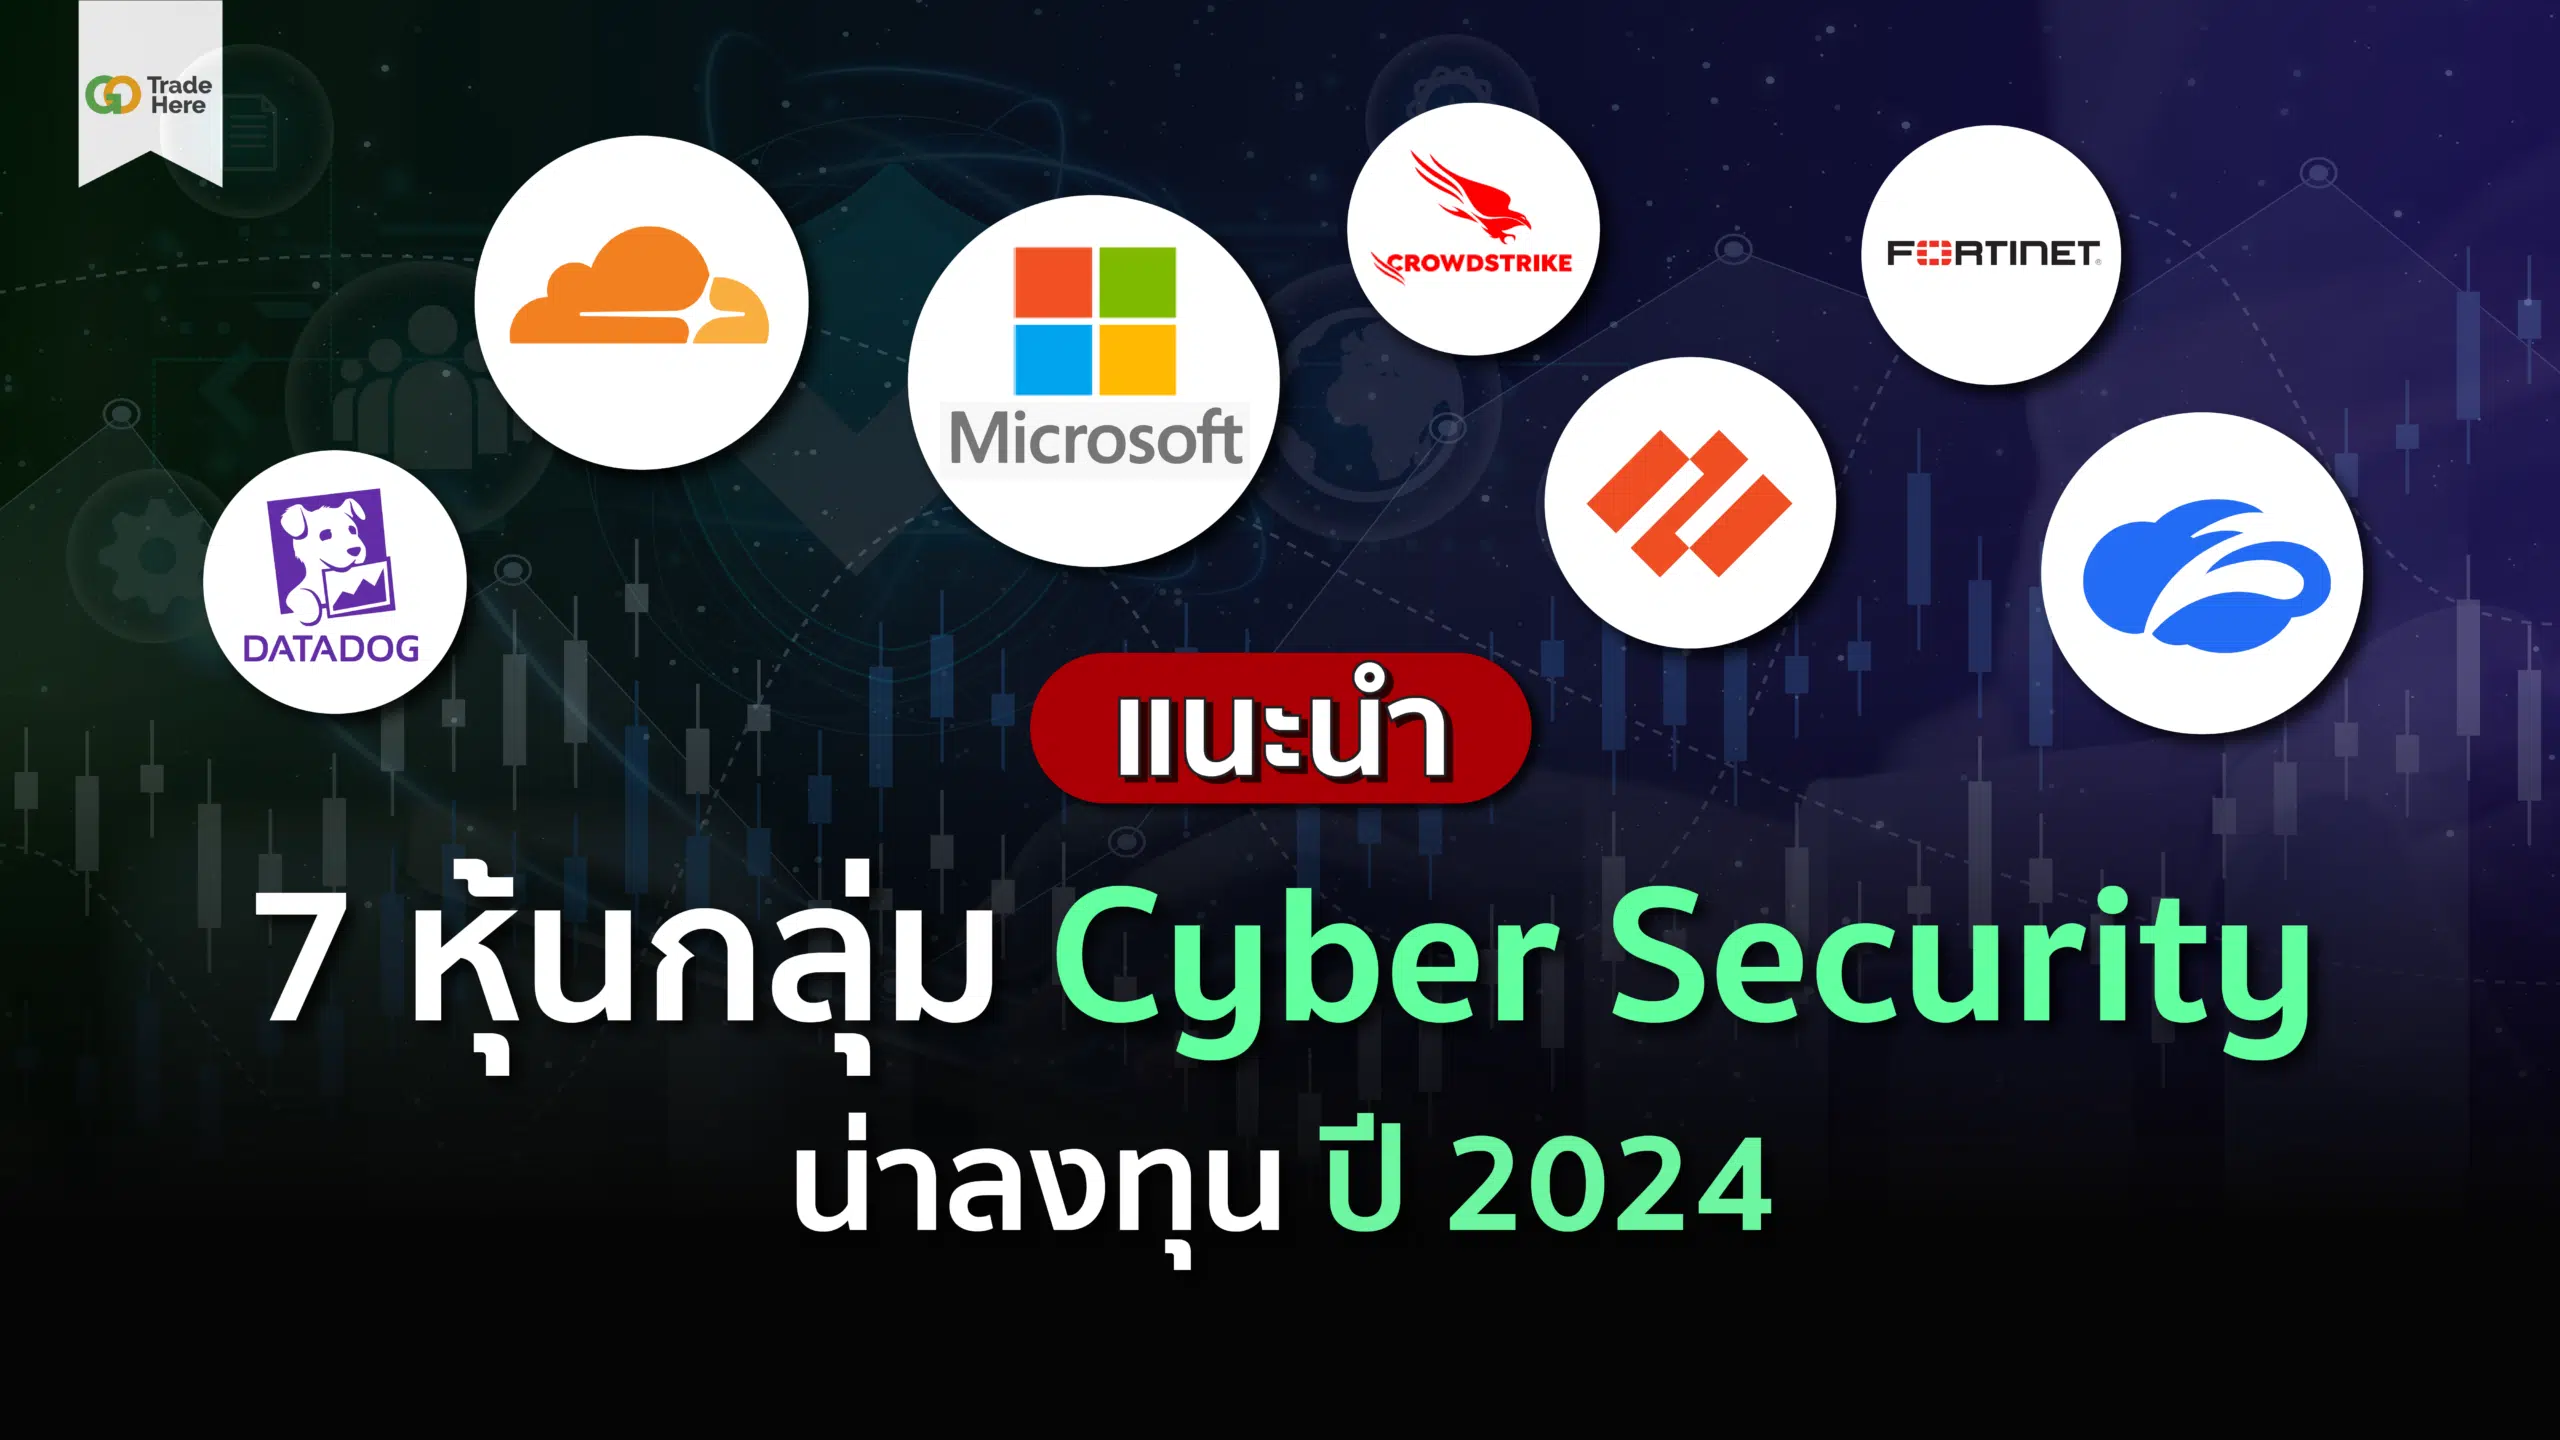 แนะนำ 7 หุ้นกลุ่ม Cyber Security ที่น่าลงทุน ปี 2024 